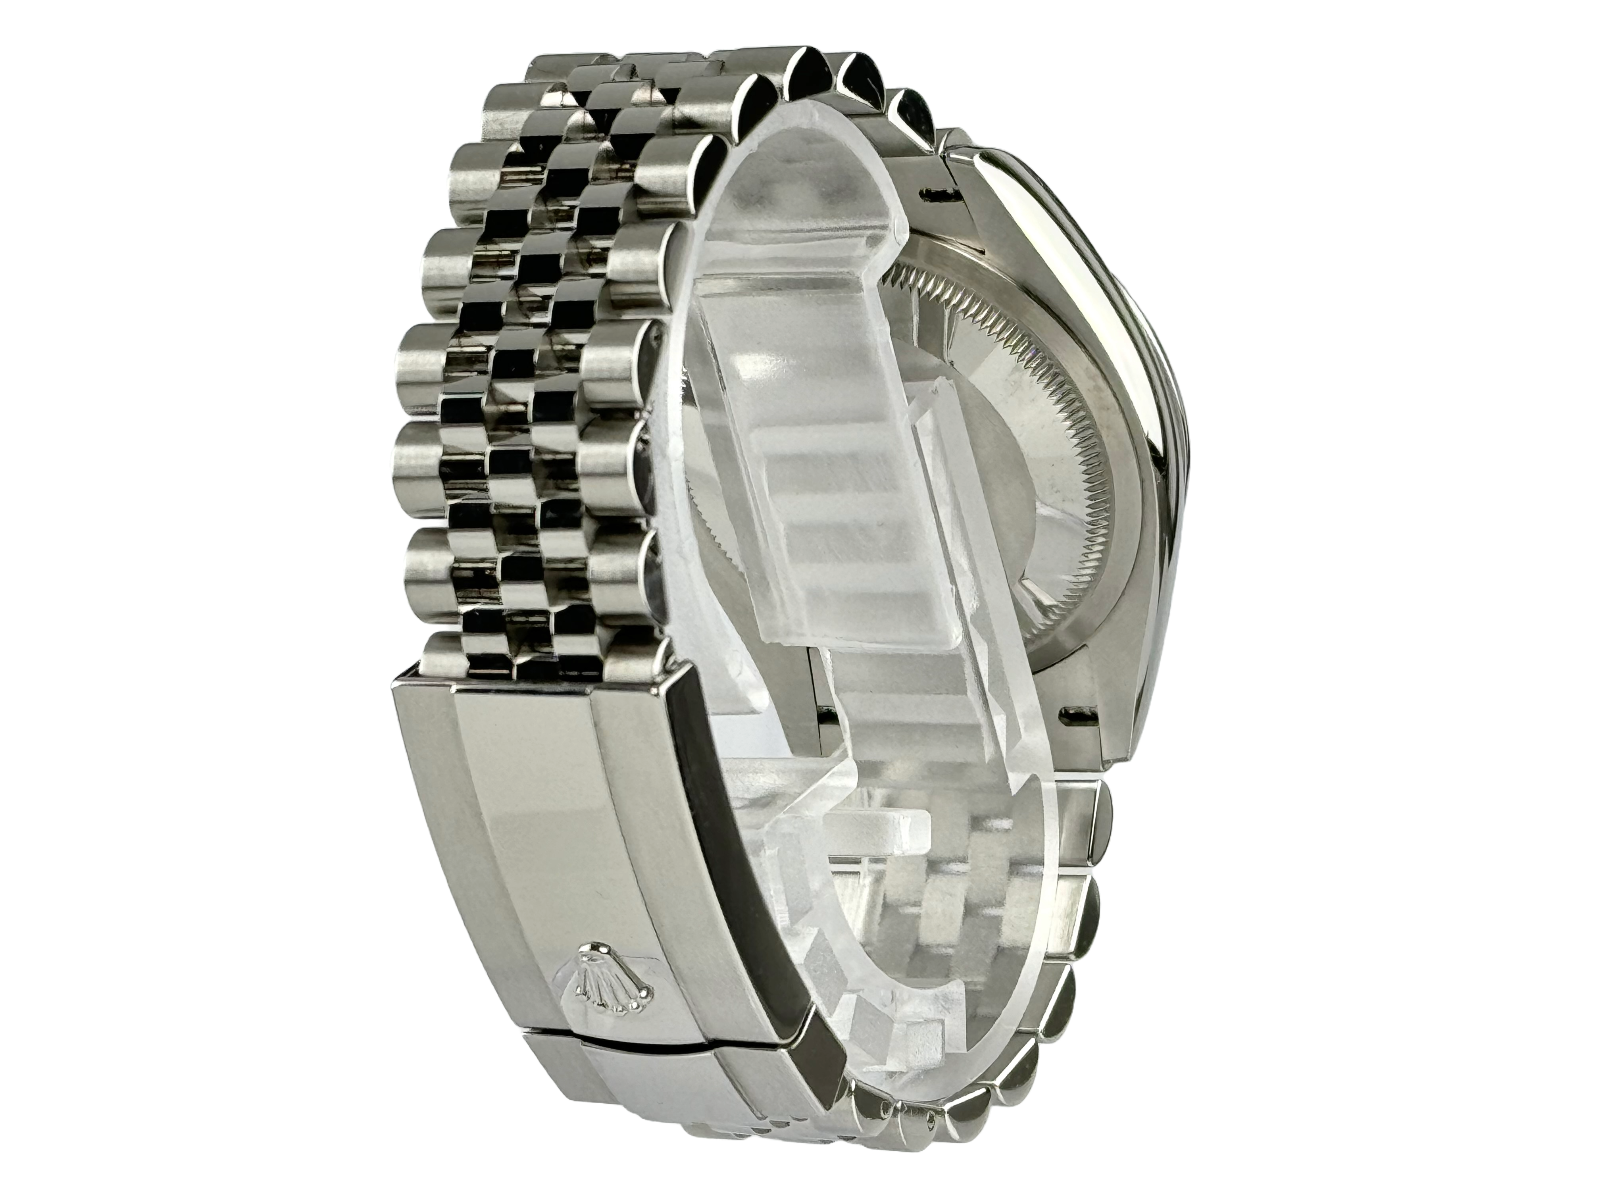 Rolex Oyster Datejust 36 Jubilee Schwarz Black Dial Herrenuhr 126200 Automatik Uhr Men´s watch